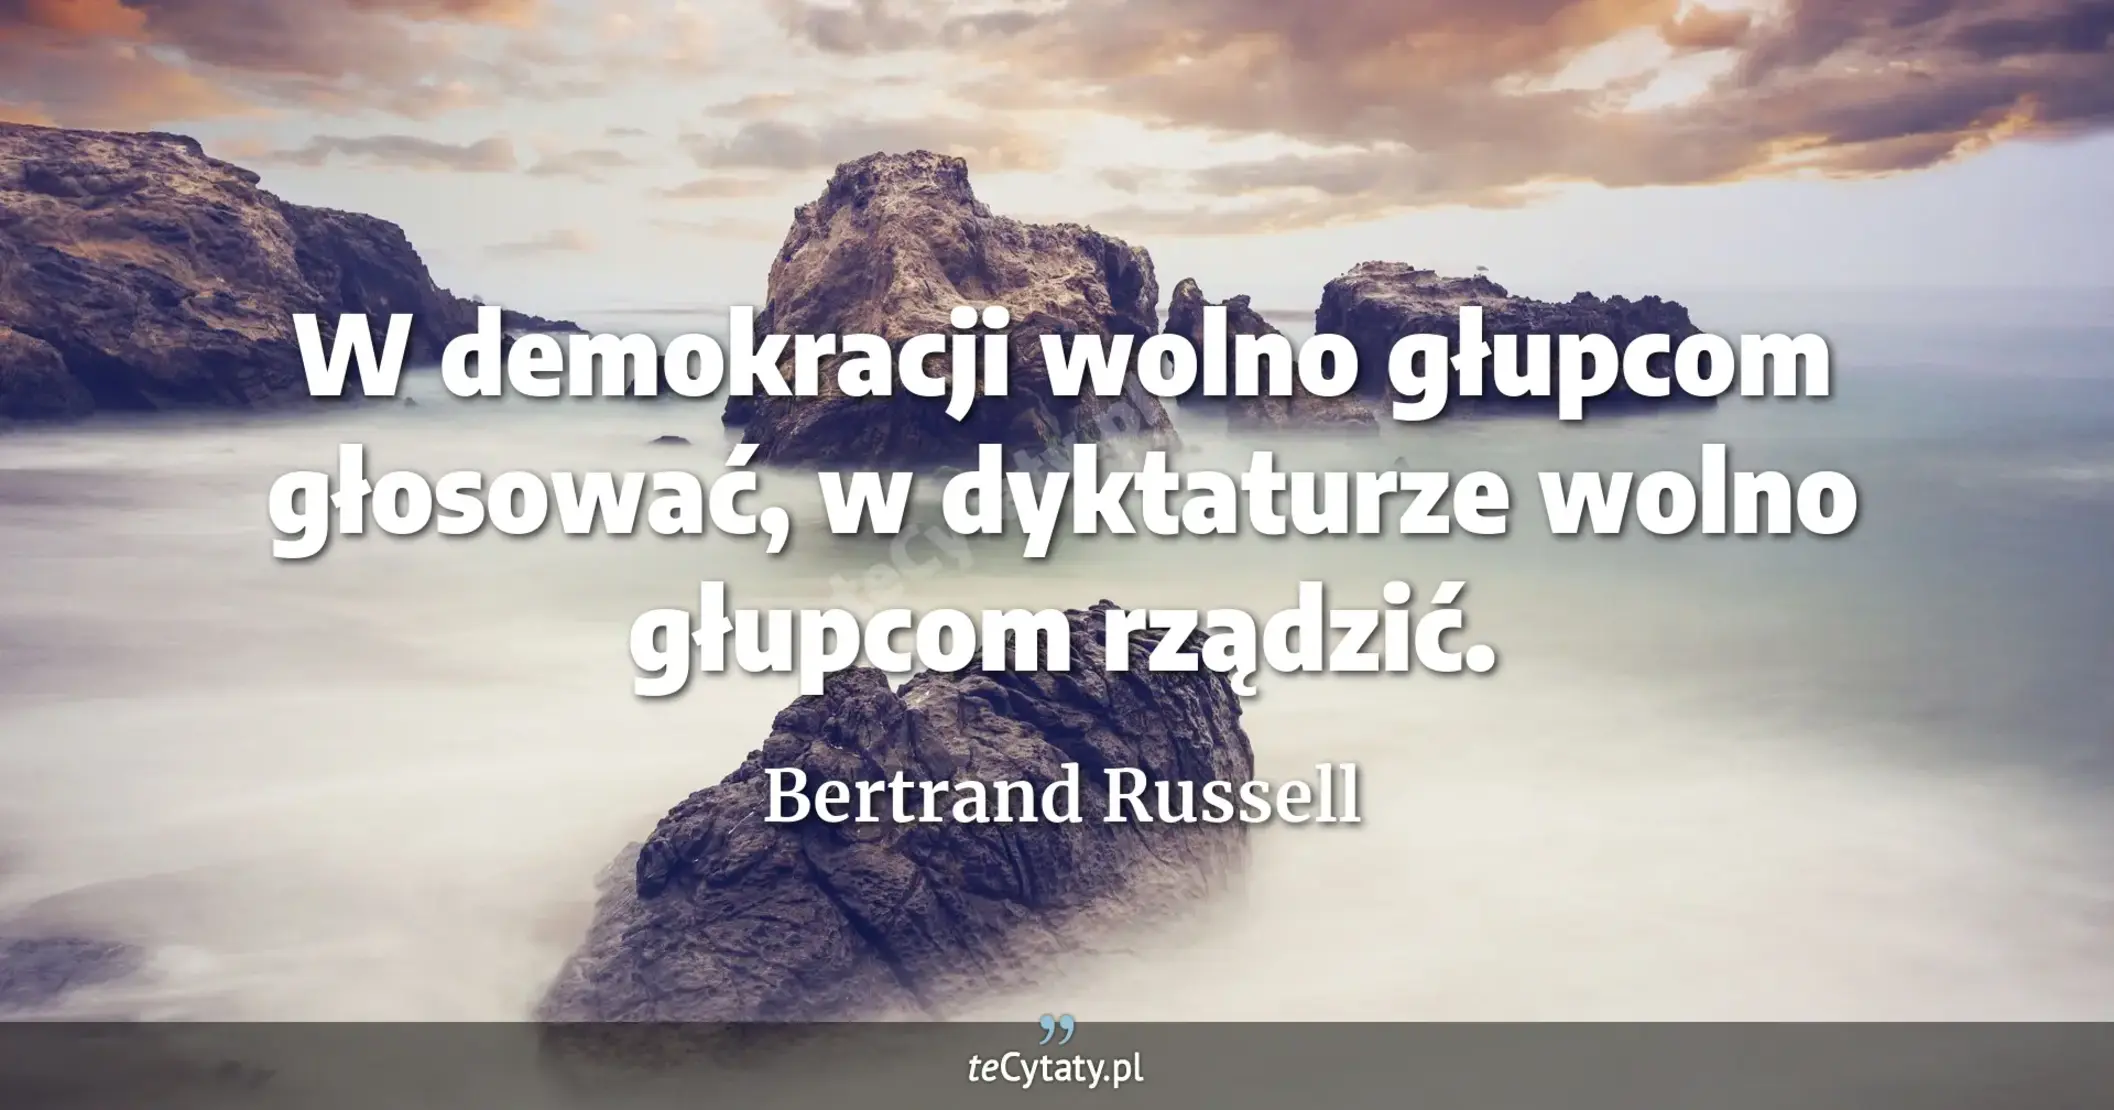 W demokracji wolno głupcom głosować, w dyktaturze wolno głupcom rządzić. - Bertrand Russell